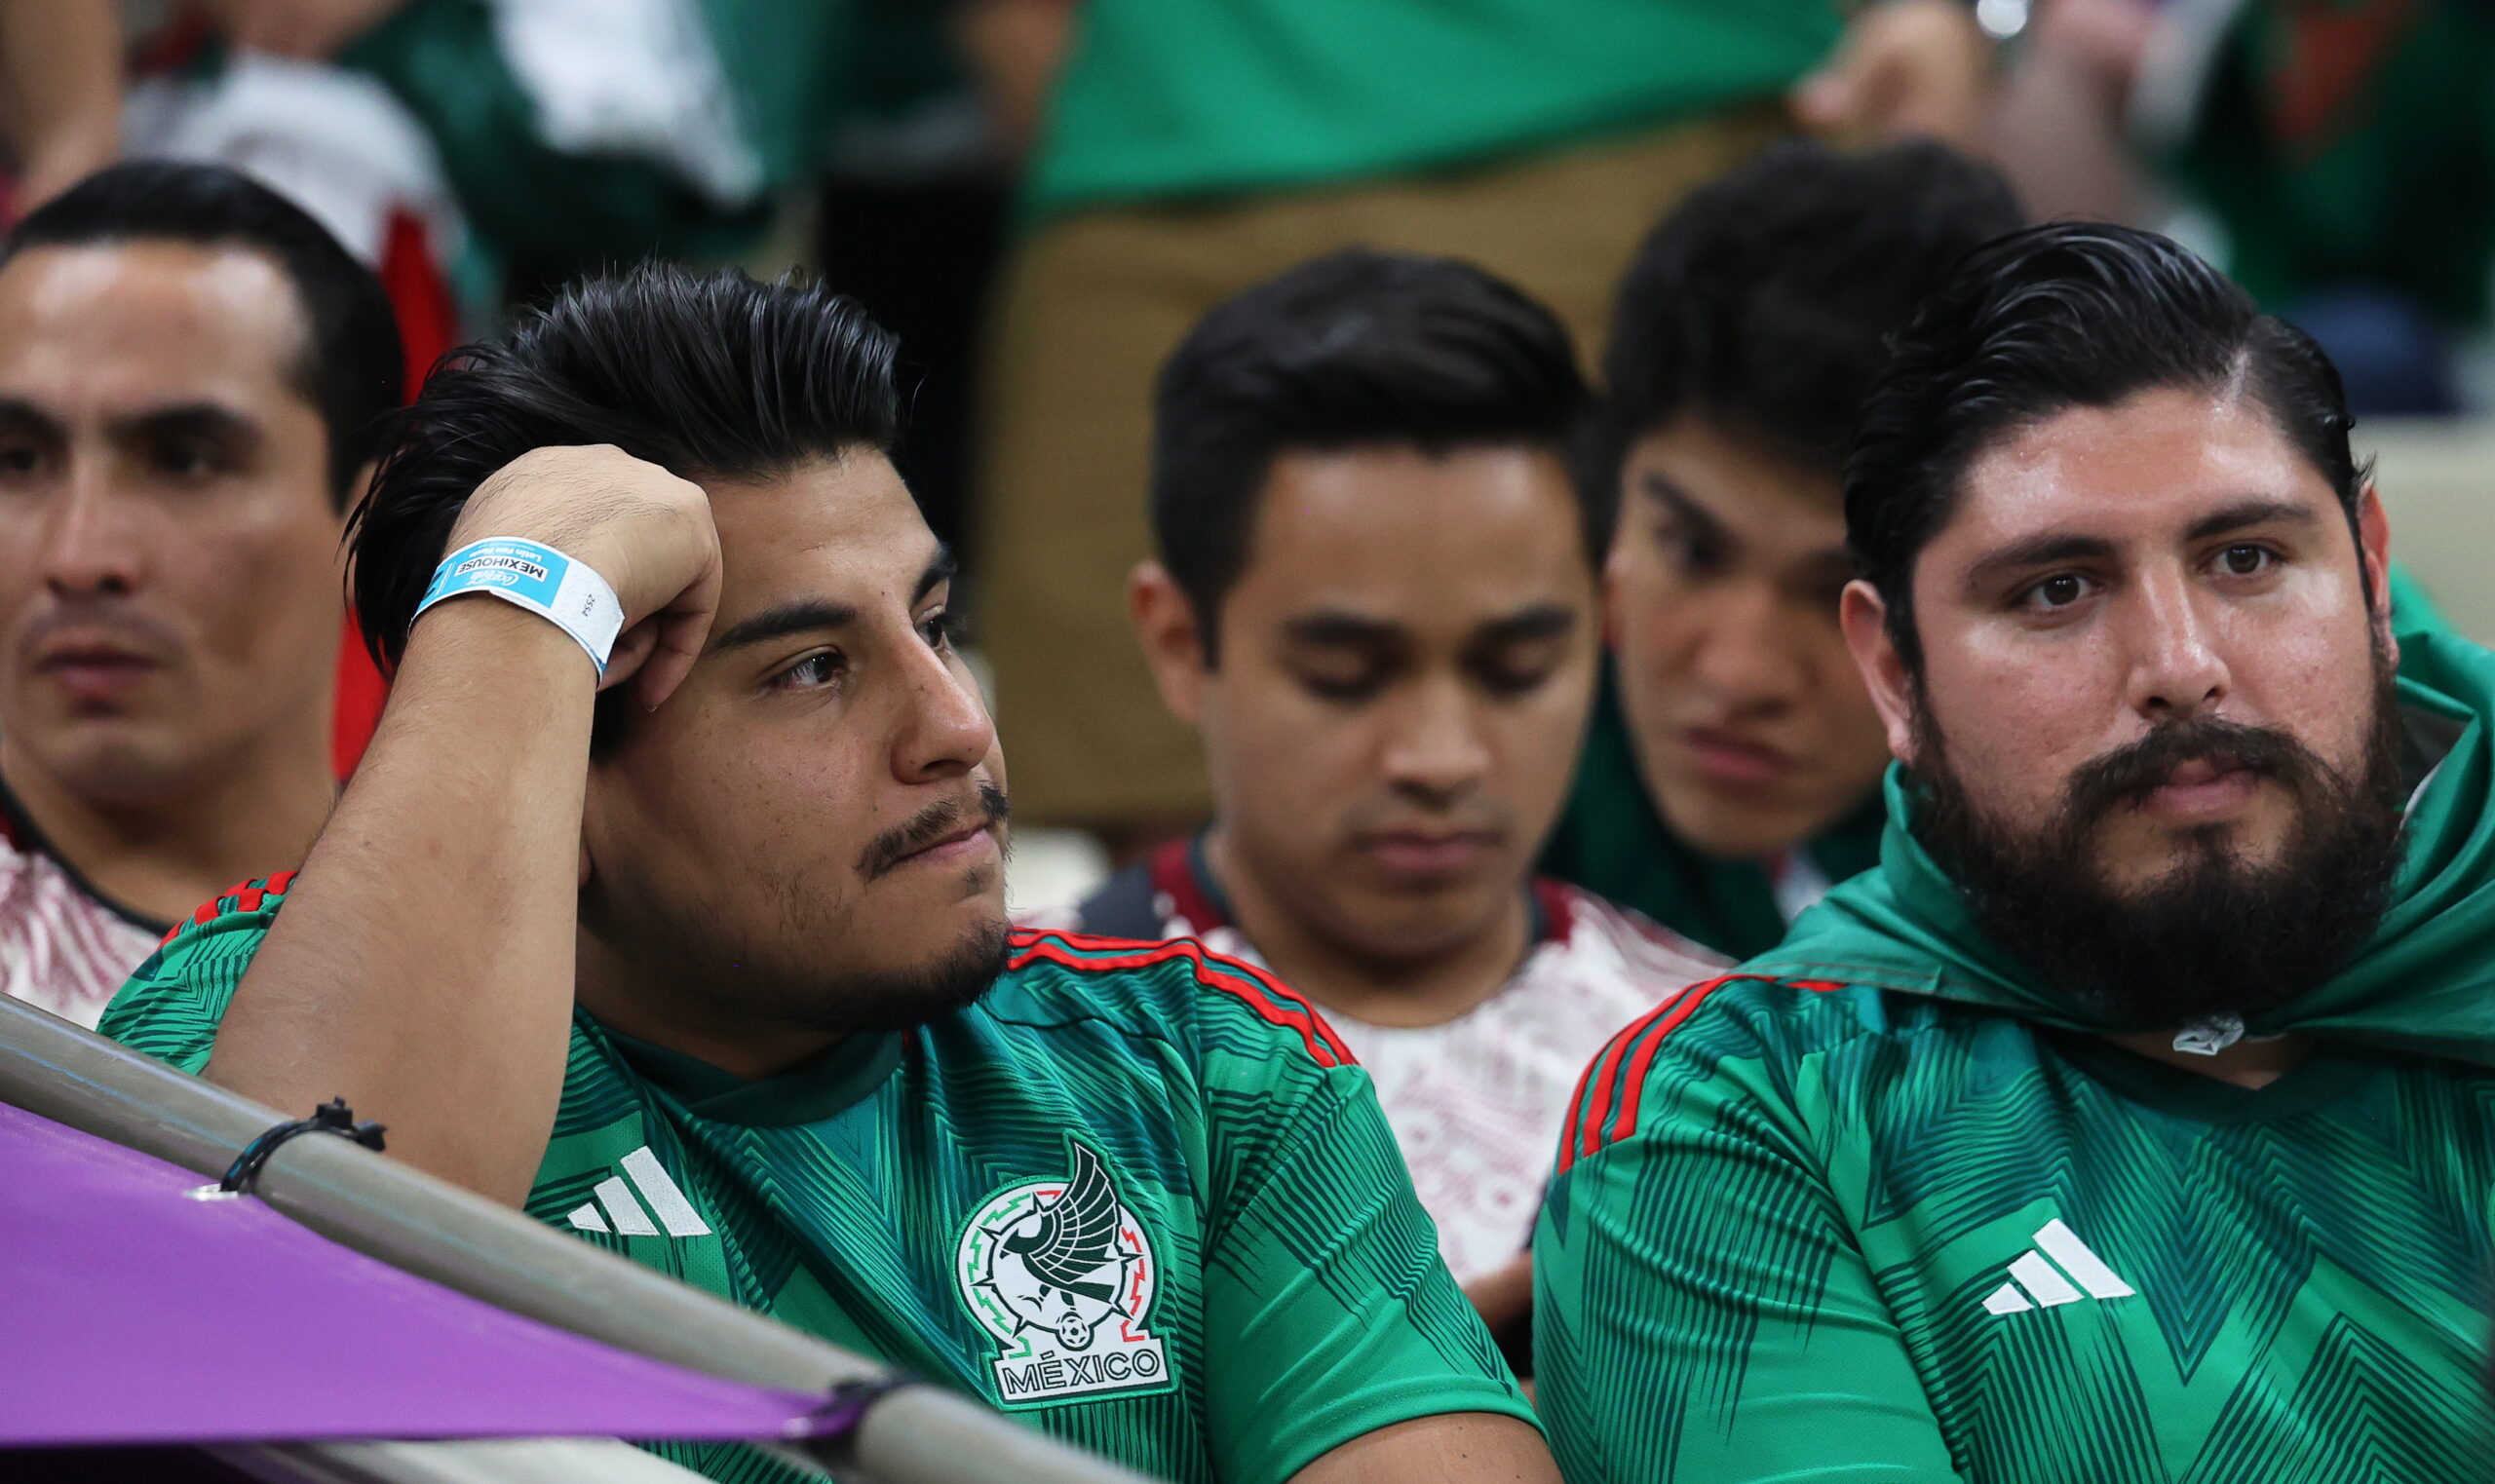 Μουντιάλ 2022, Σαουδική Αραβία - Μεξικό 1-2: Η πρώτη νίκη των σομπρέρος δεν ήταν αρκετή για την πρόκριση